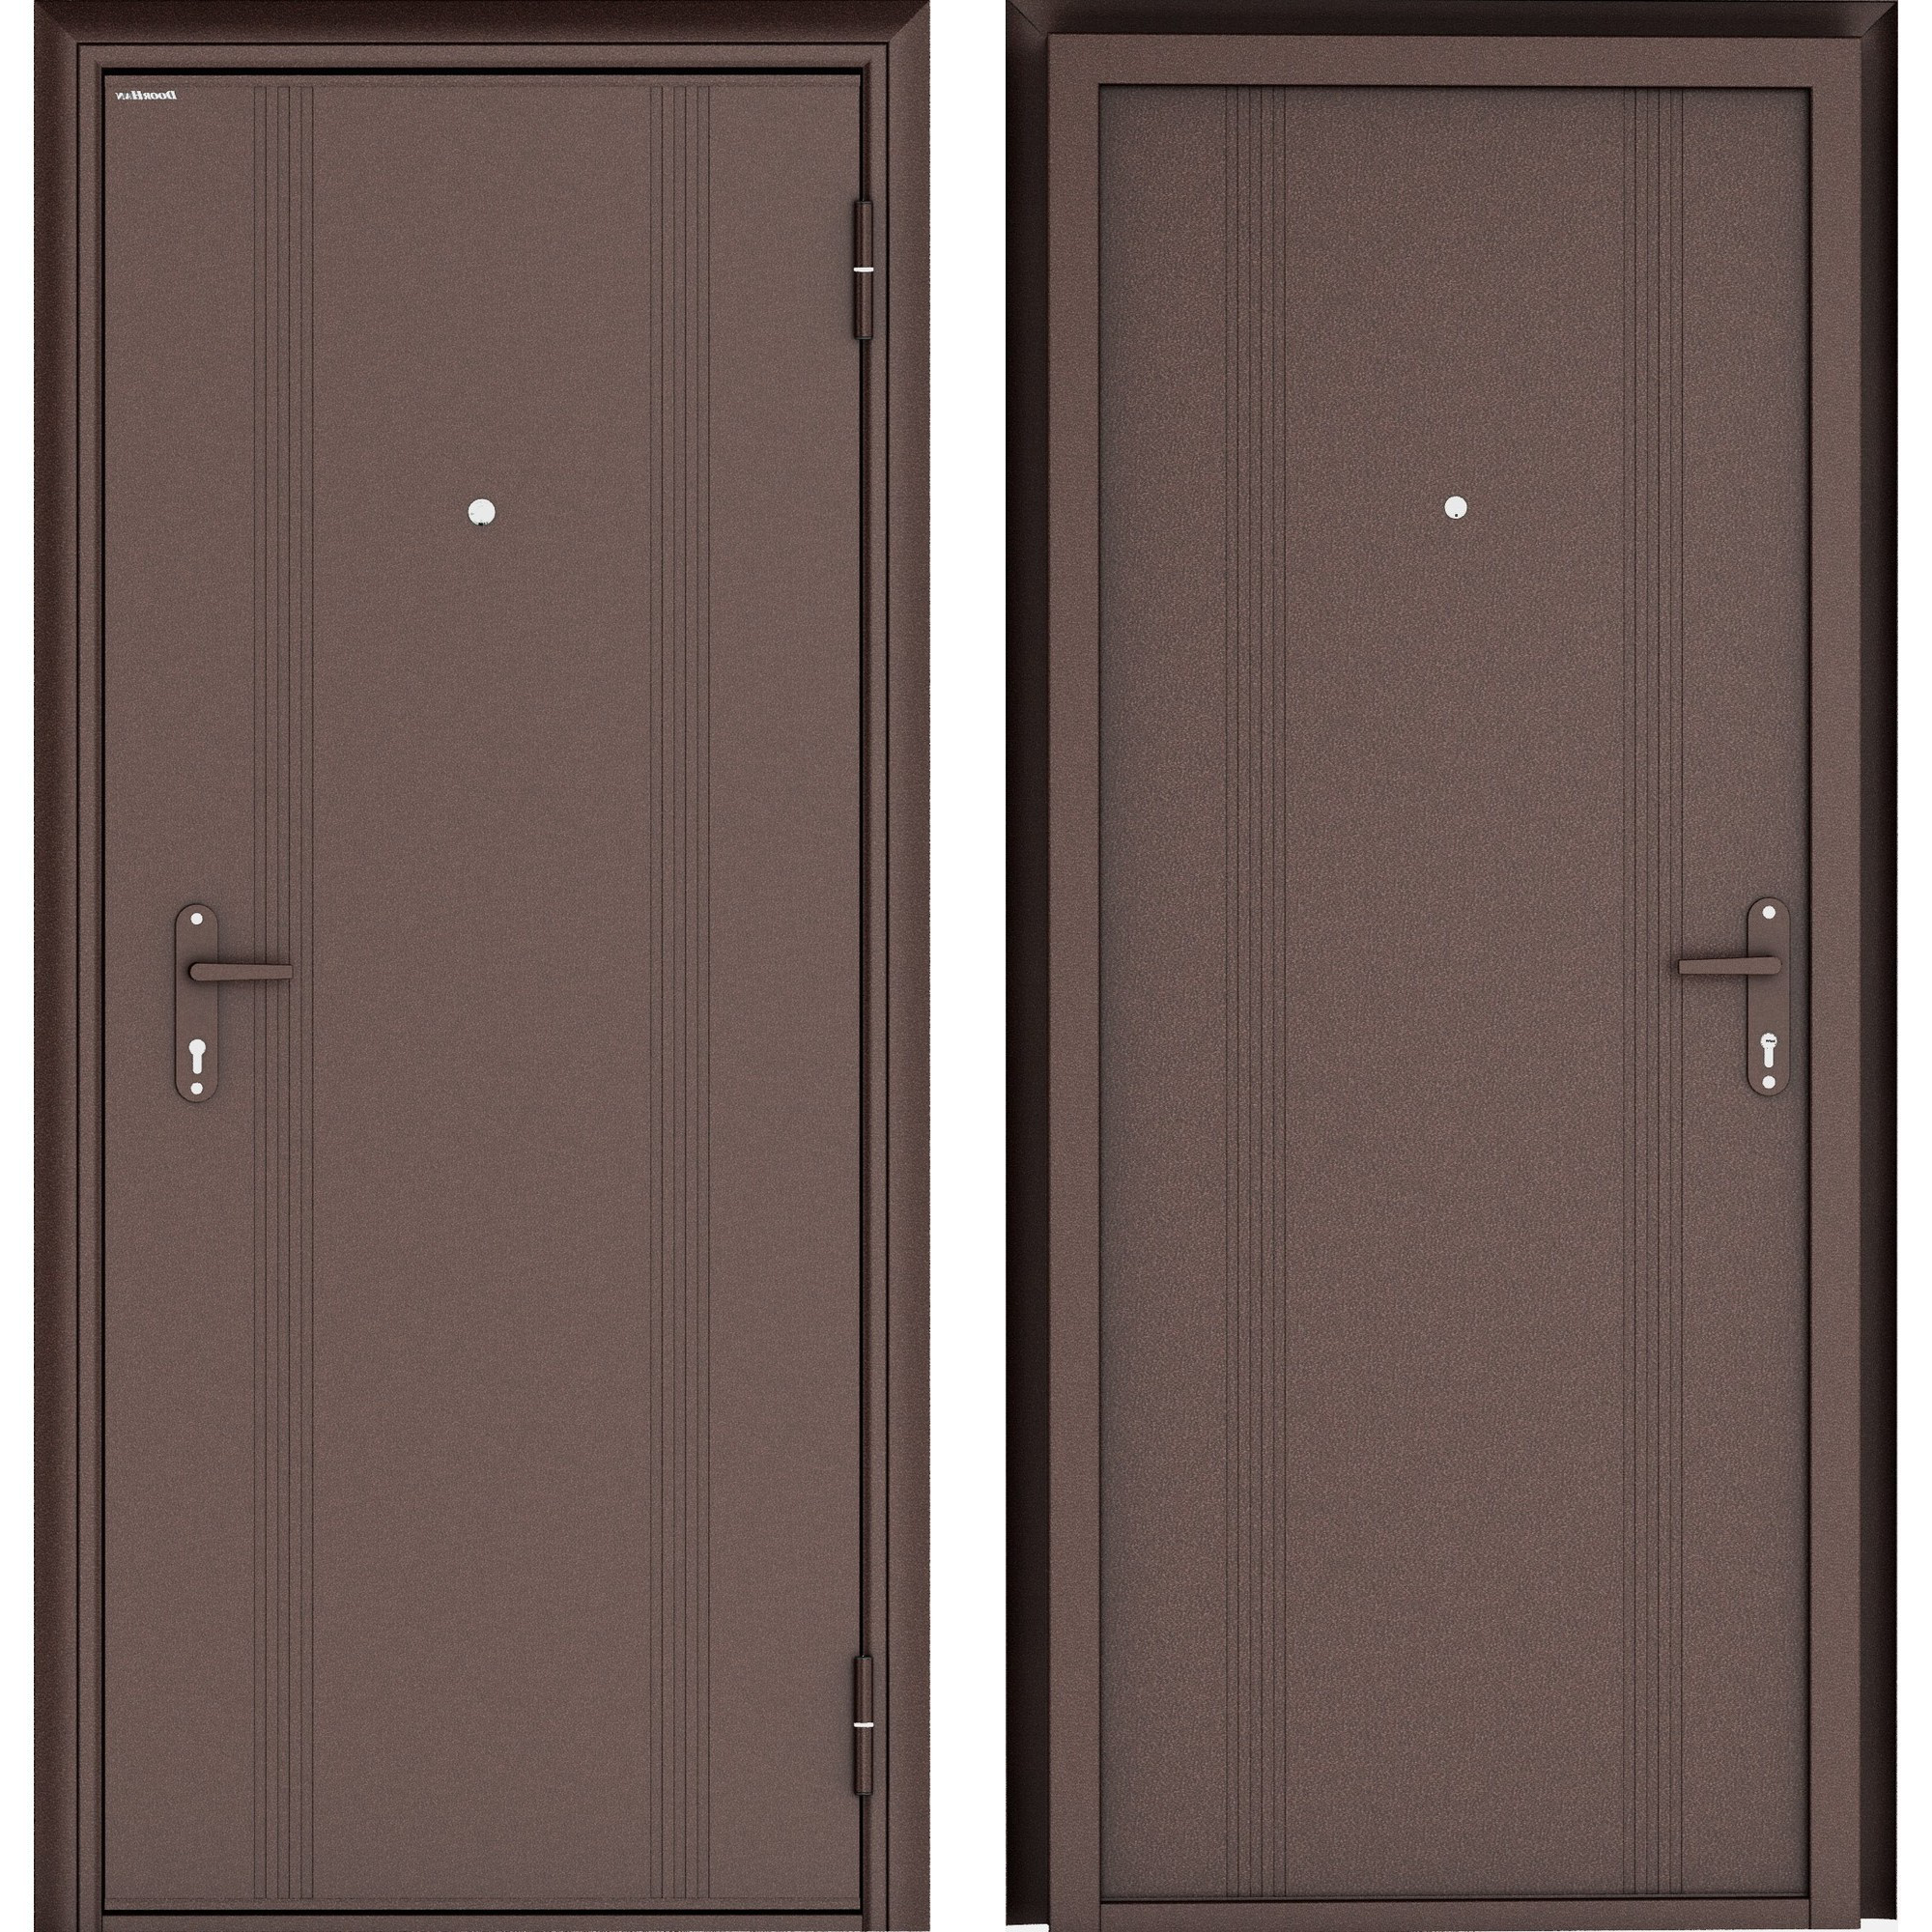 16802307 Дверь входная металлическая Эко, 880 мм, правая, цвет антик медь STLM-0007191 DOORHAN